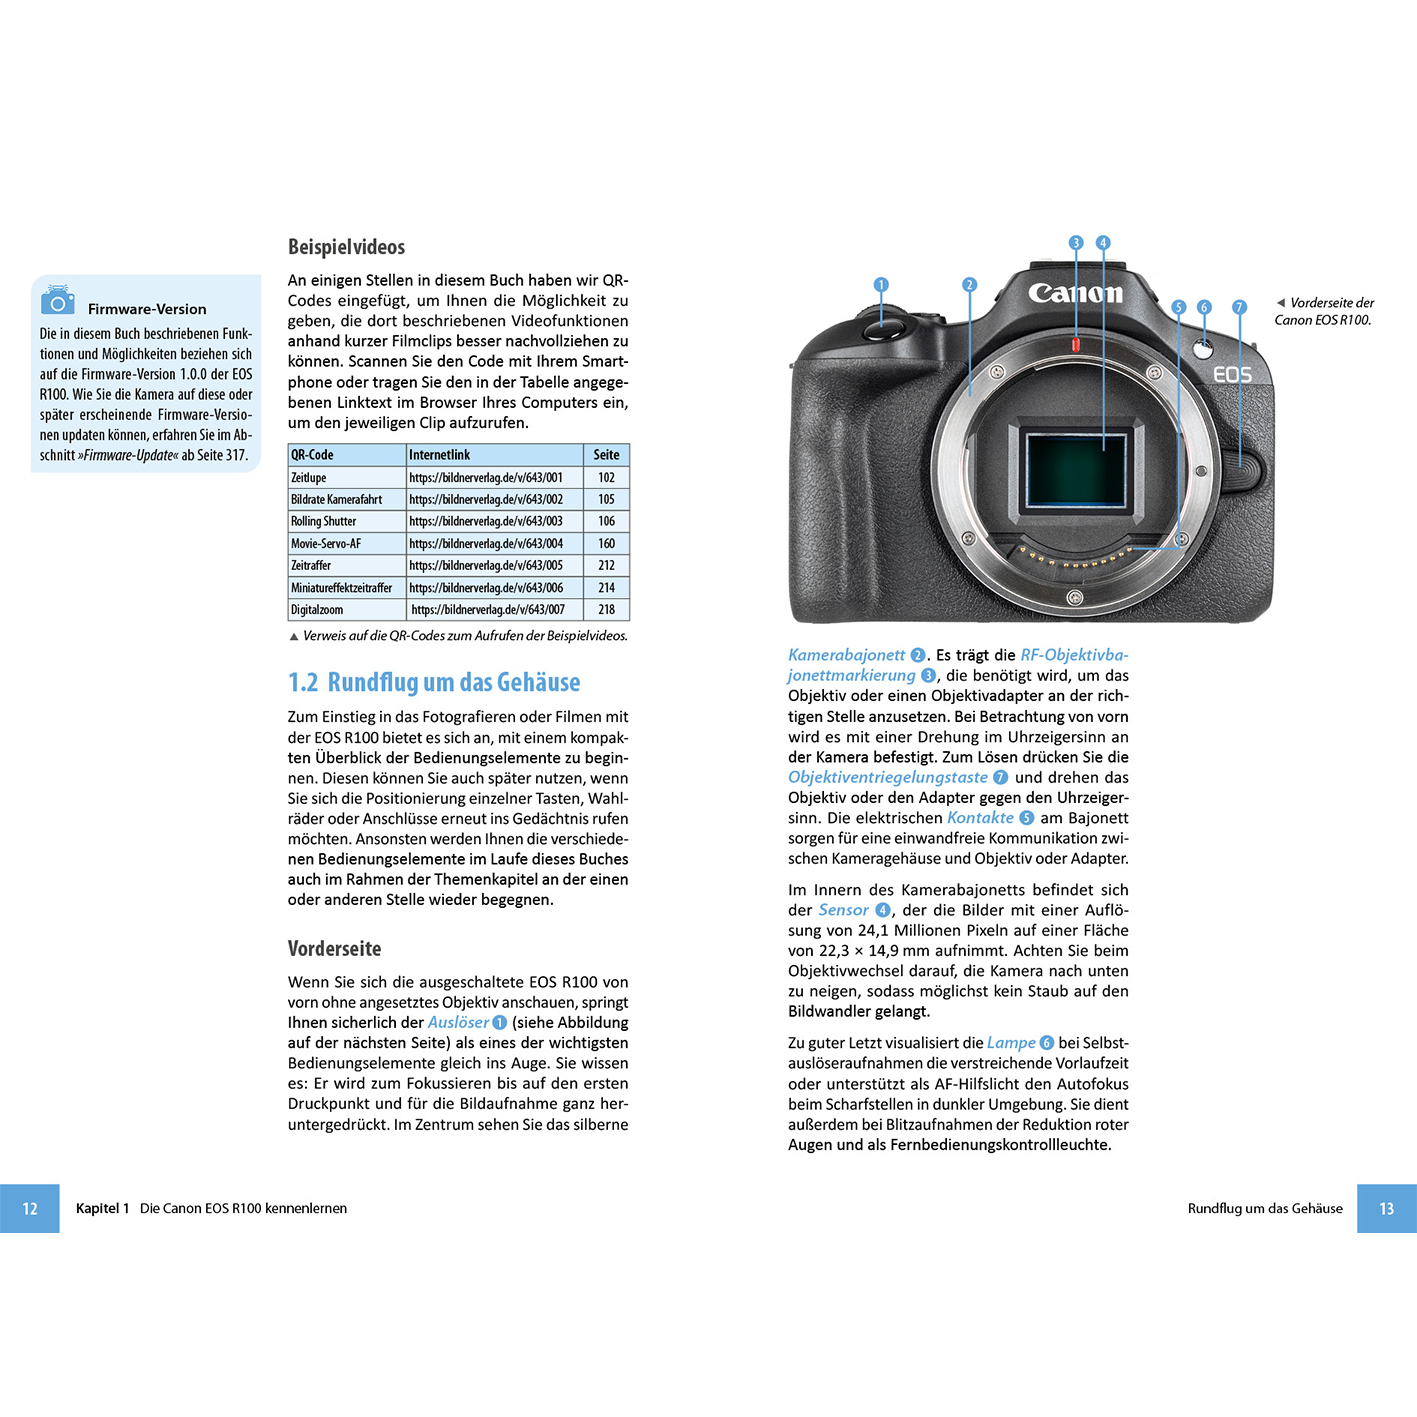 R100 - Ihrer Das Kamera umfangreiche EOS zu Praxisbuch Canon